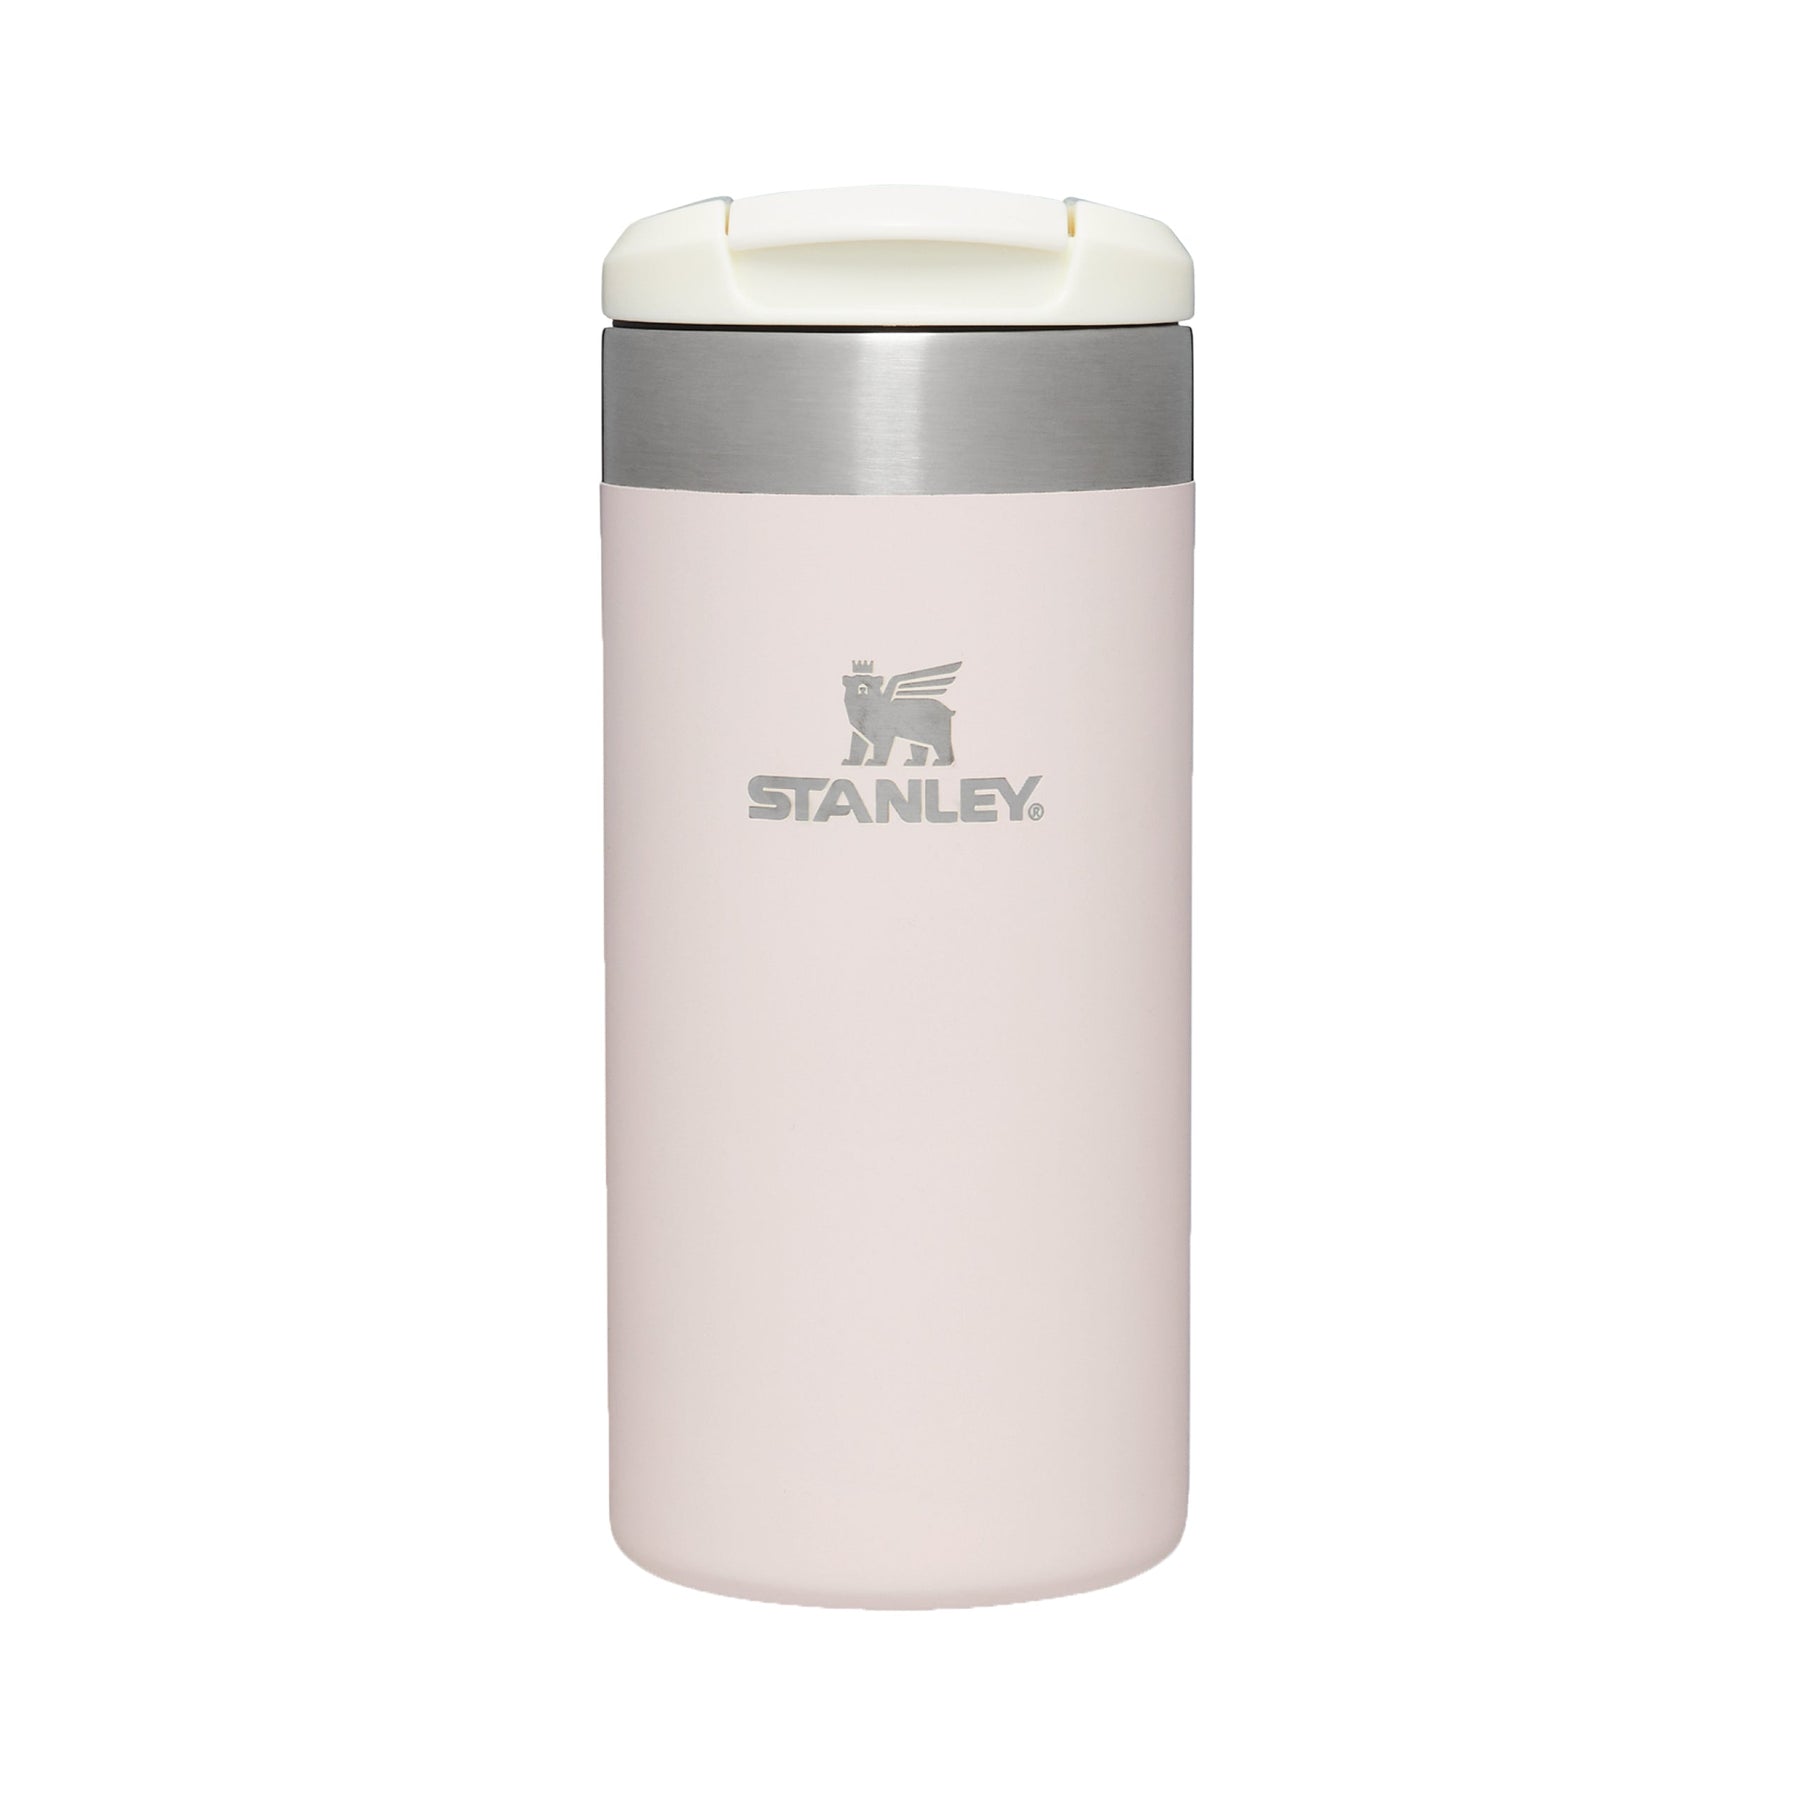 Porte-chapstick Stanley, gobelet Stanley 40oz, accessoire de coupe Stanley  -  France